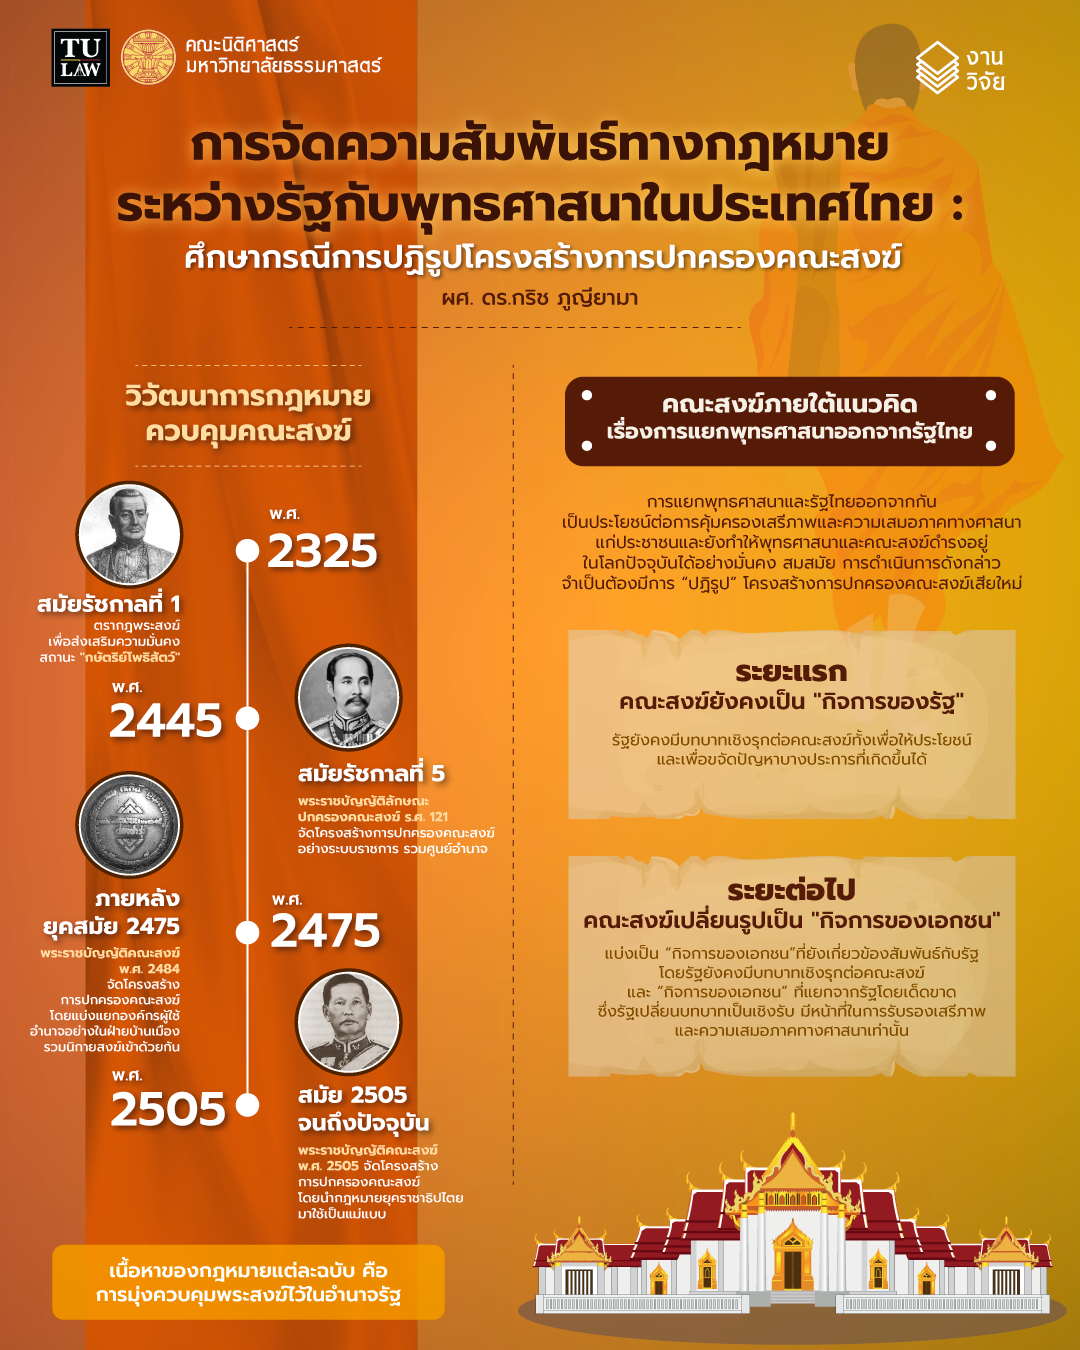 ความรู้ทางกฎหมายหลากหลายและเข้าใจง่าย ชุดที่ 22 : “การจัดความสัมพันธ์ทางกฎหมายระหว่างรัฐกับพุทธศาสนาในประเทศไทย : ศึกษากรณีการปฏิรูปโครงสร้างการปกครองคณะสงฆ์”